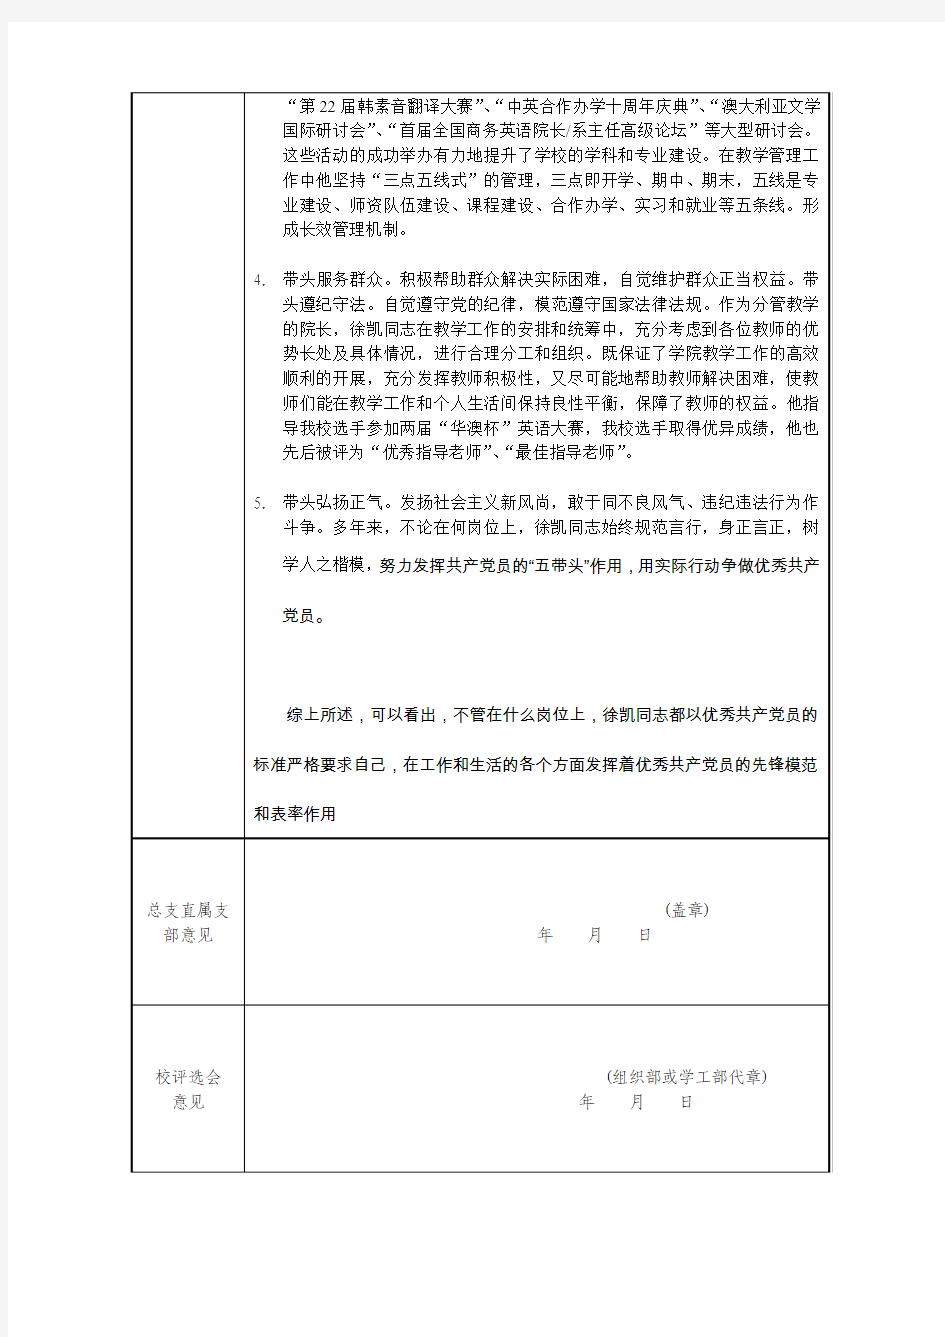 上海对外贸易学院优秀共产党员推荐审批表